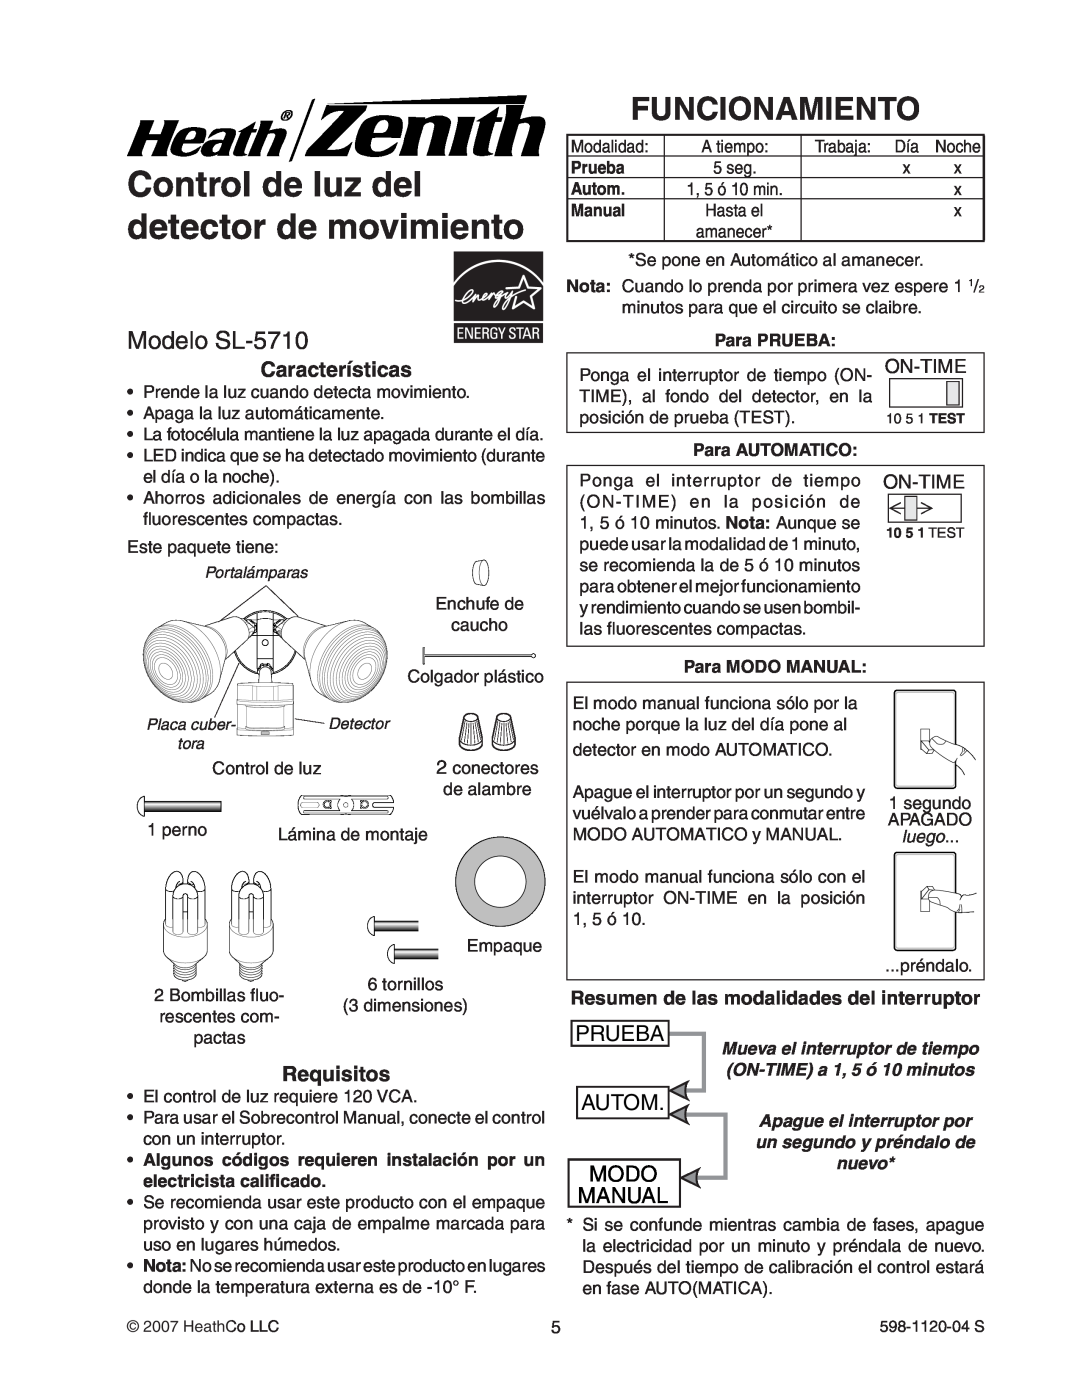 Heath Zenith Control de luz del detector de movimiento, Funcionamiento, Modelo SL-5710, Prueba, Autom, Modo, Manual 